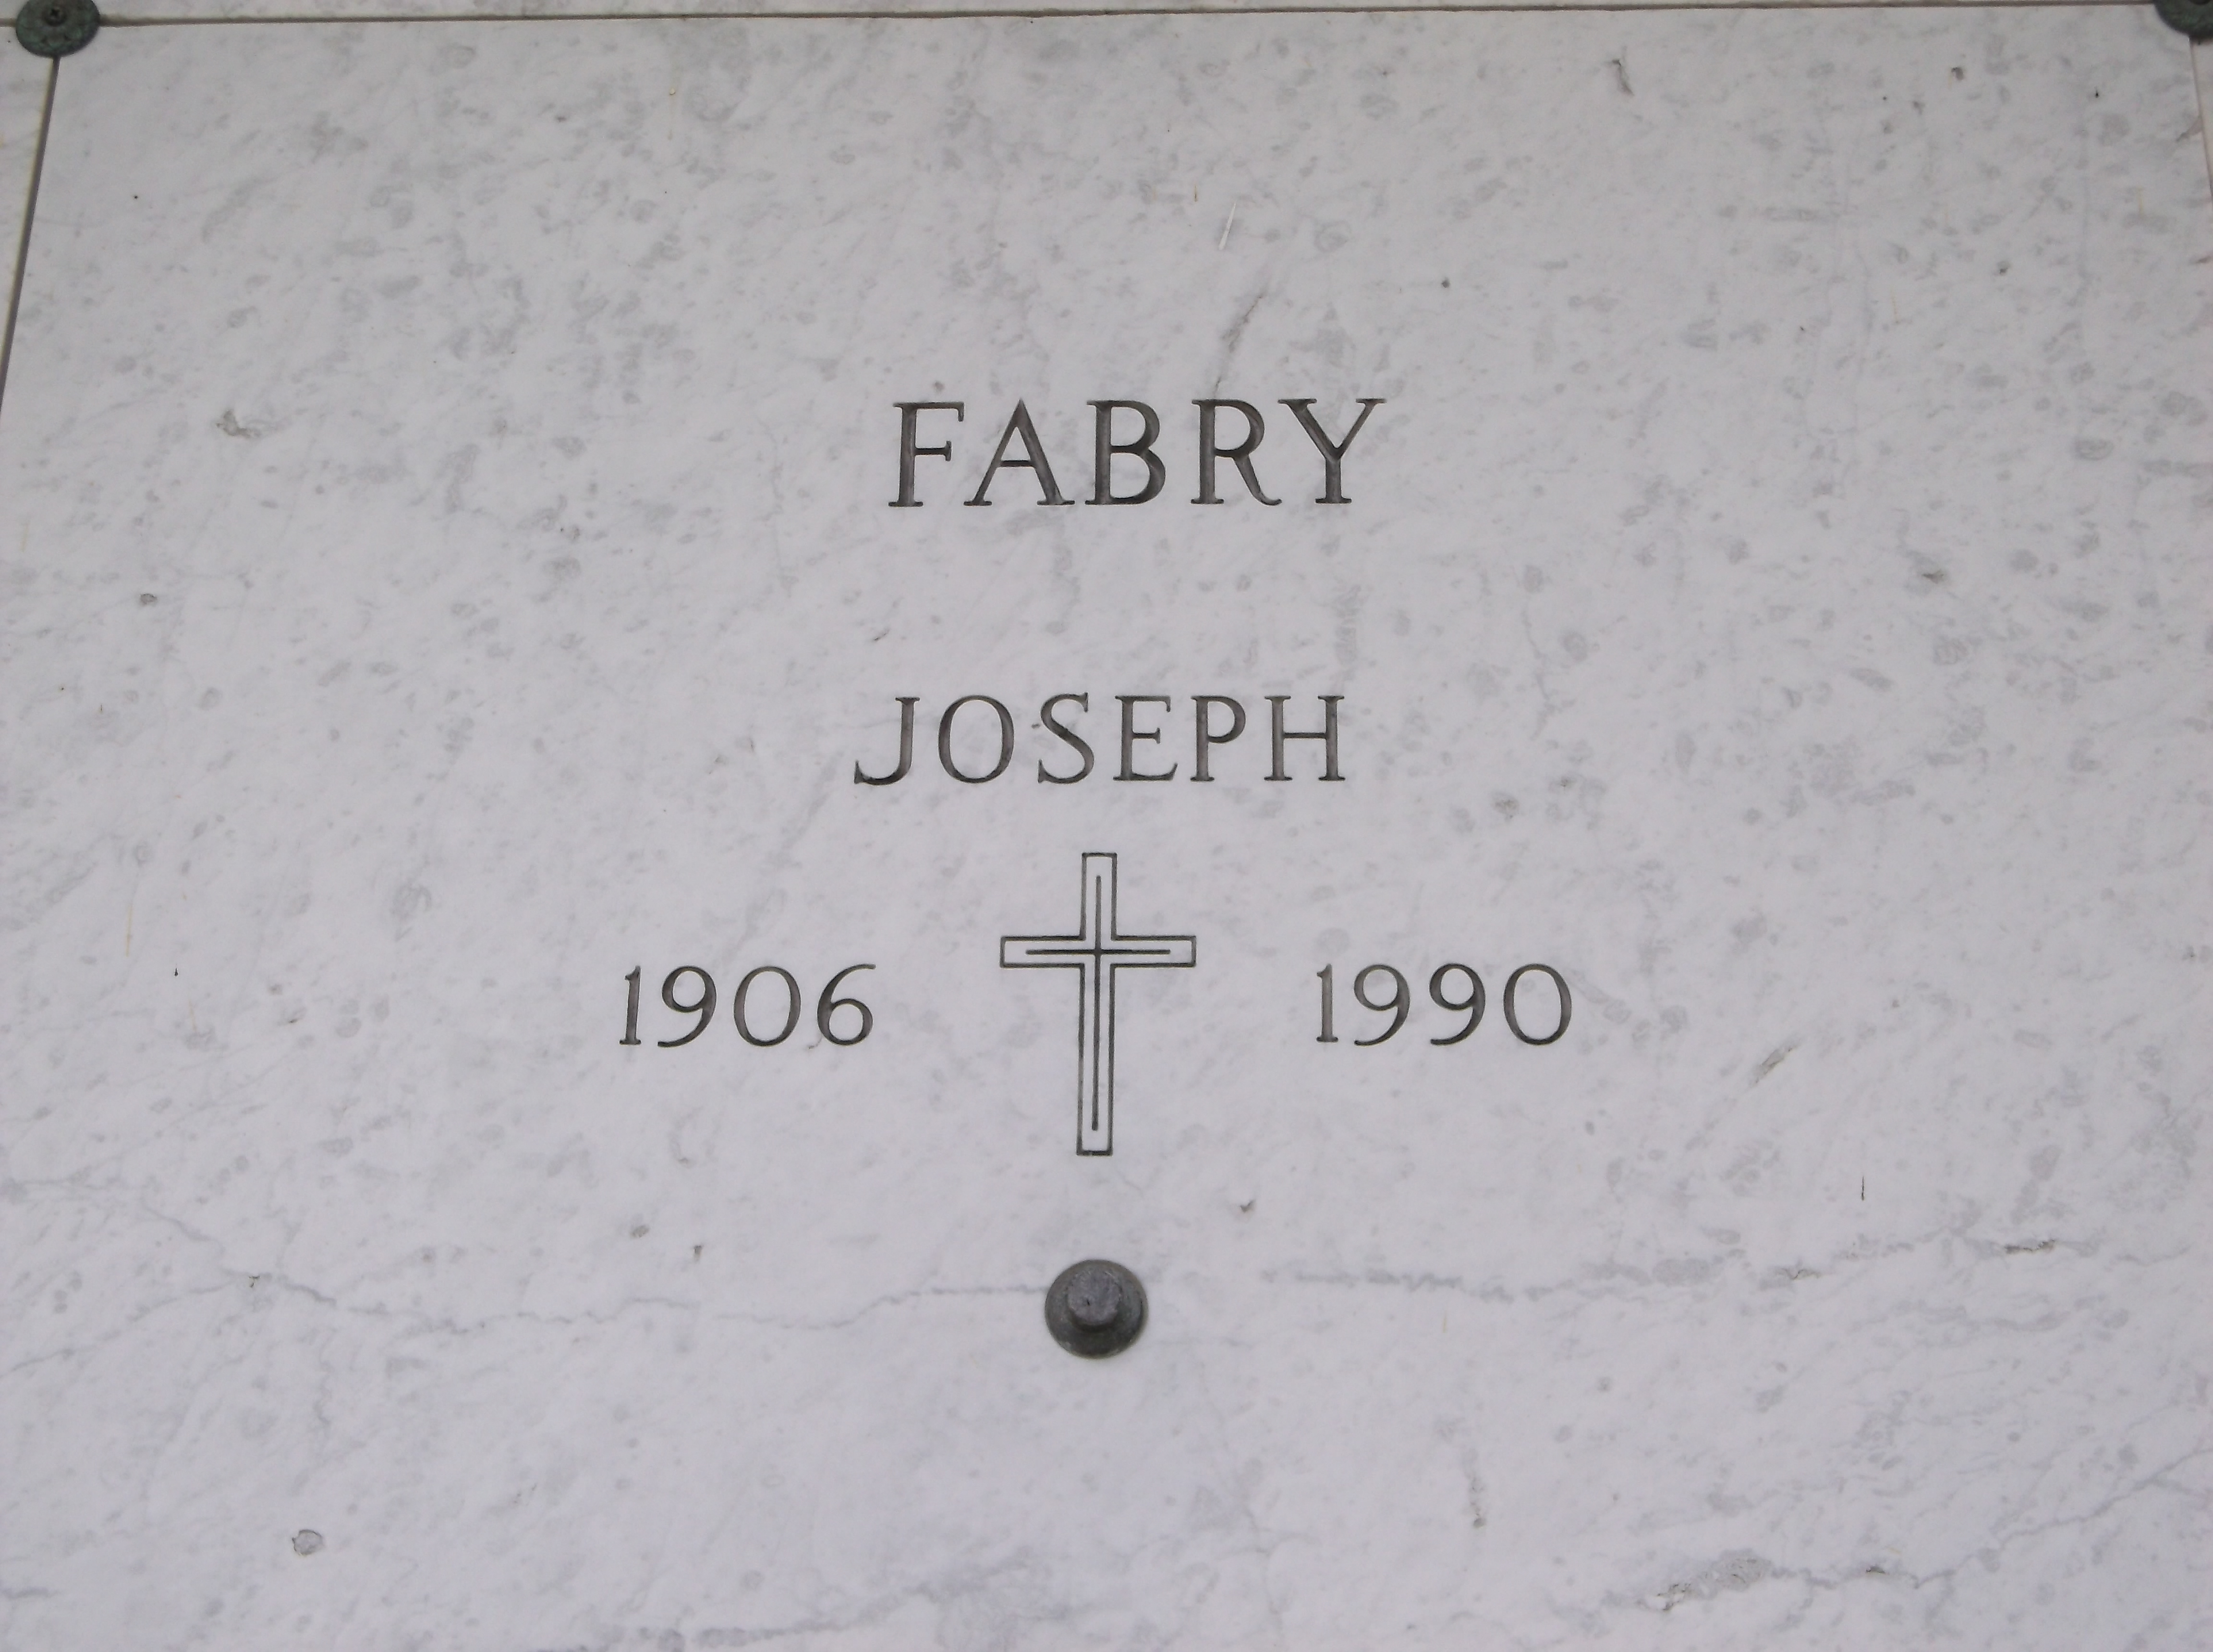 Joseph Fabry